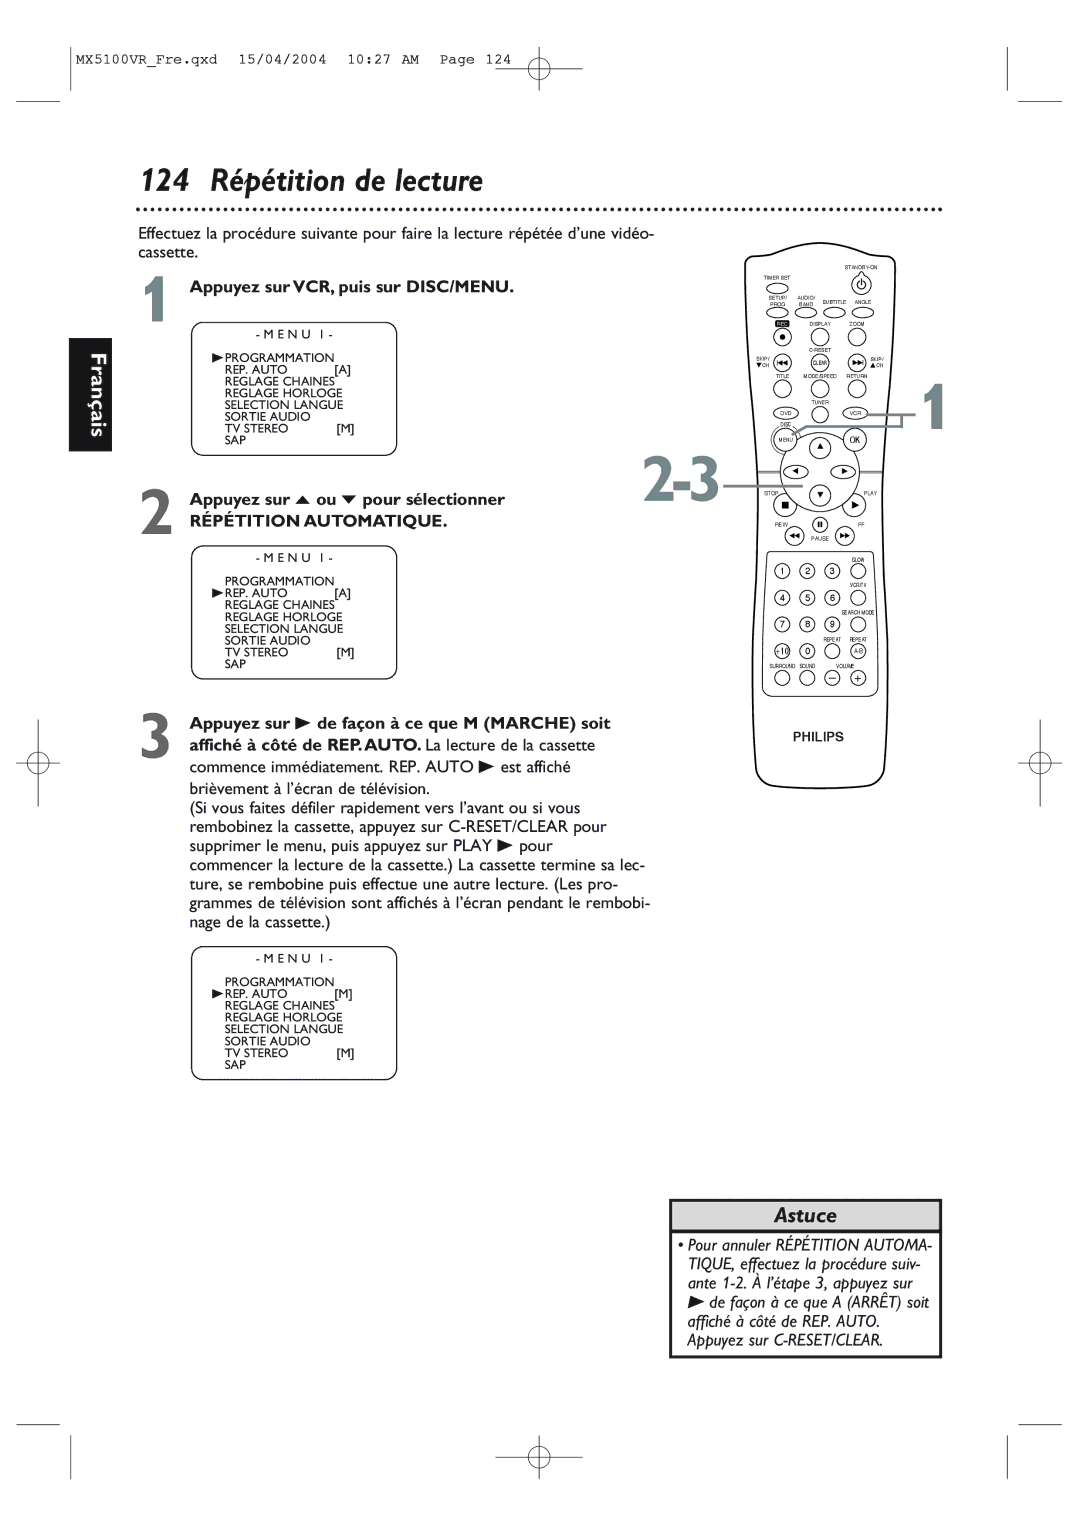 Philips MX5100VR/37B owner manual 124 Répétition de lecture, Appuyez sur B de façon à ce que M Marche soit 